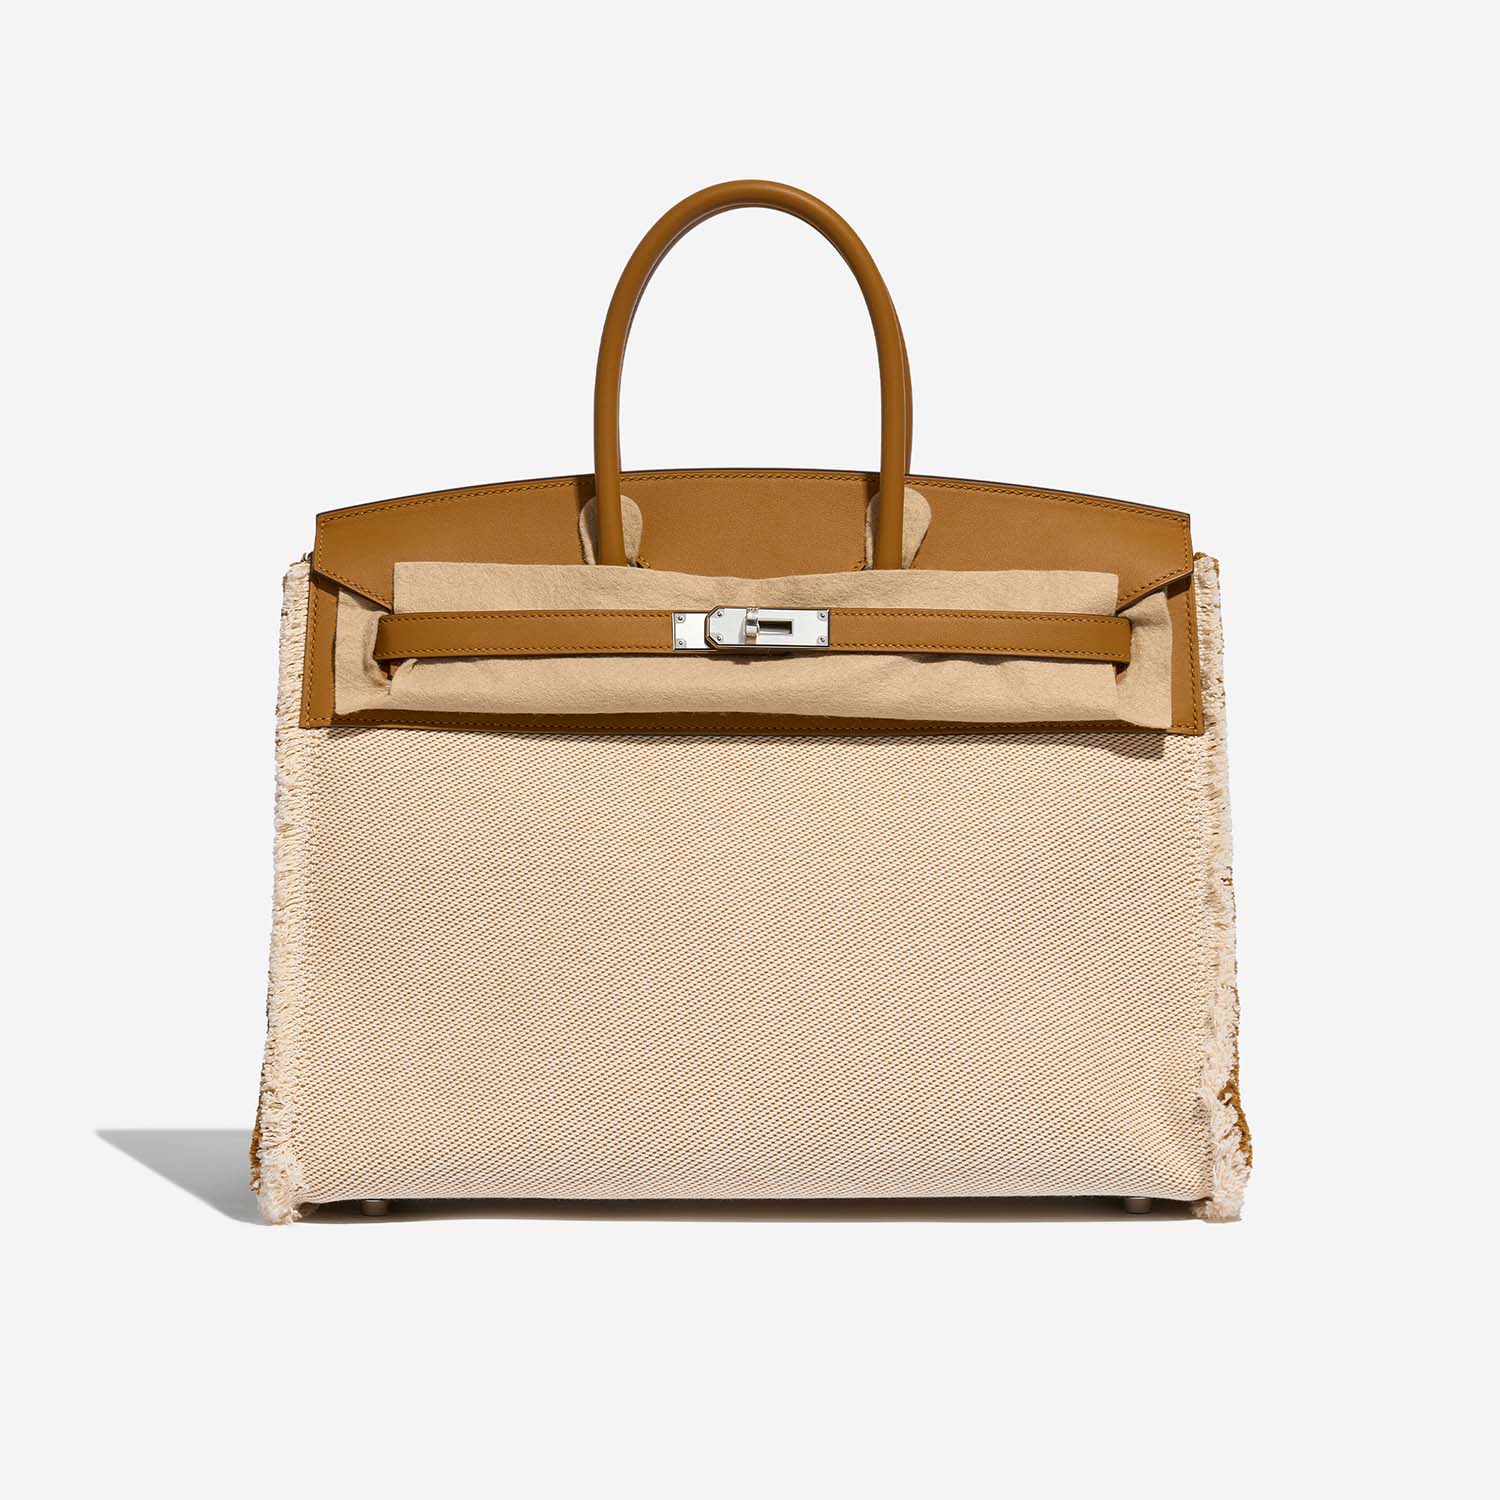 Hermès Birkin Fray 35 Sesam Front Velt | Verkaufen Sie Ihre Designer-Tasche auf Saclab.com